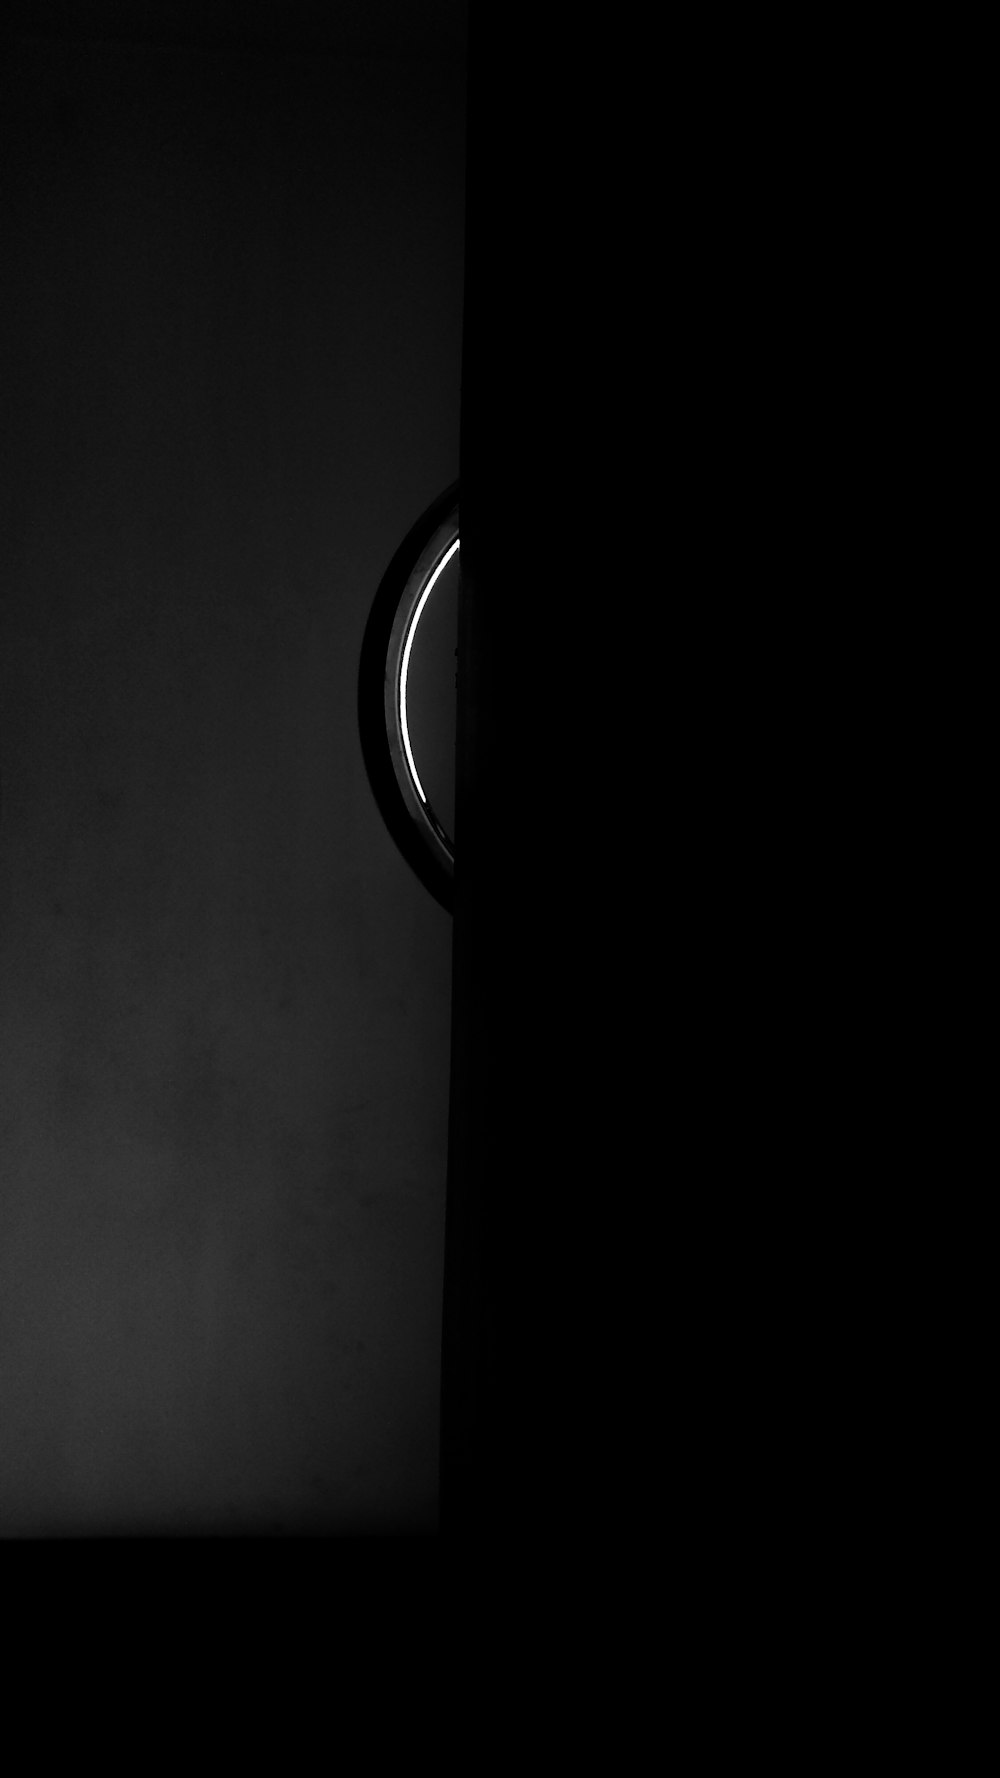 暗い部屋の時計の白黒写真